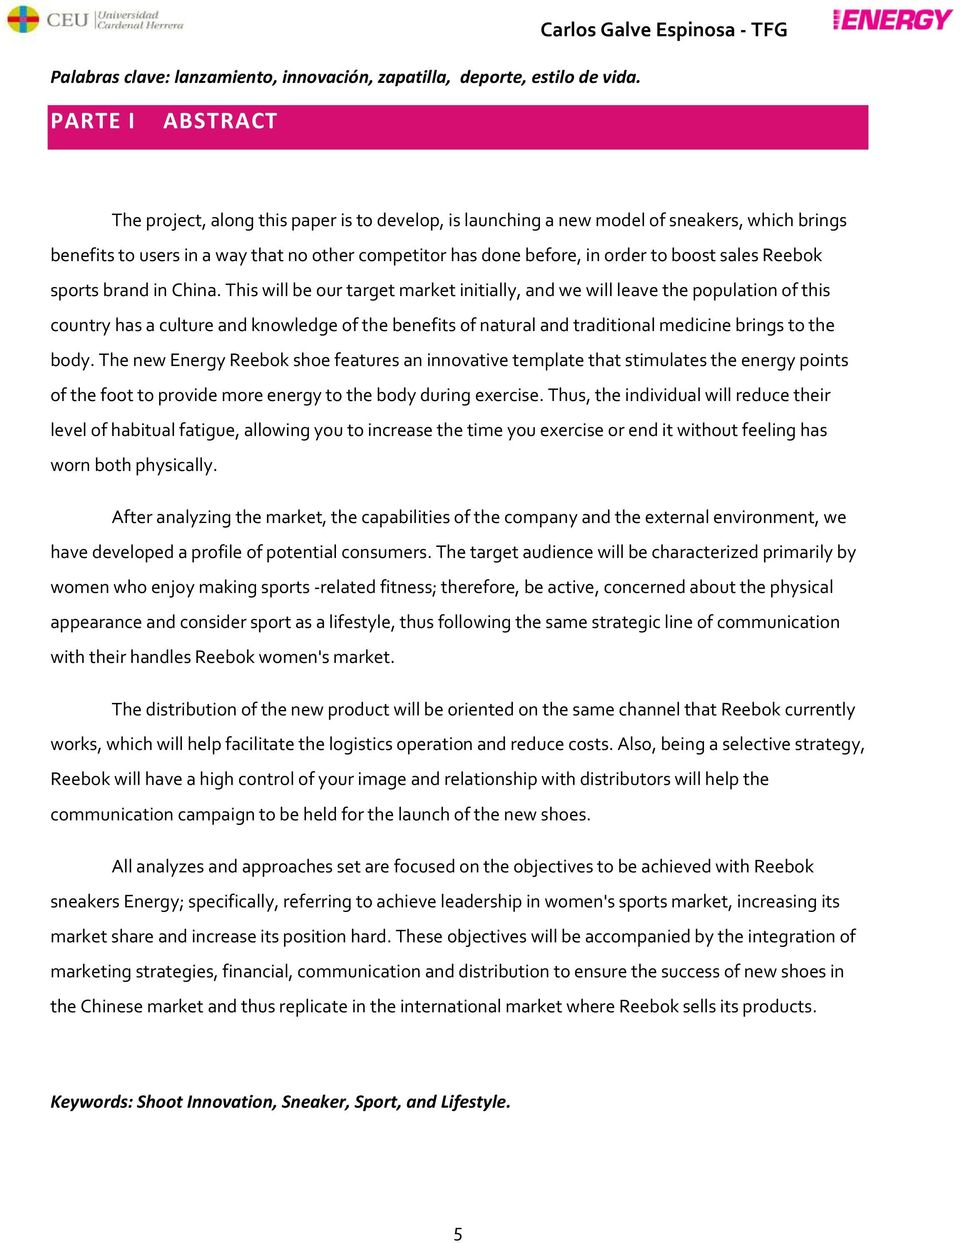 Plan de Lanzamiento de un nuevo producto. Reebok Energy. Facultad de Derecho, Empresa y Ciencias Políticas. Grado en Marketing - PDF Free Download